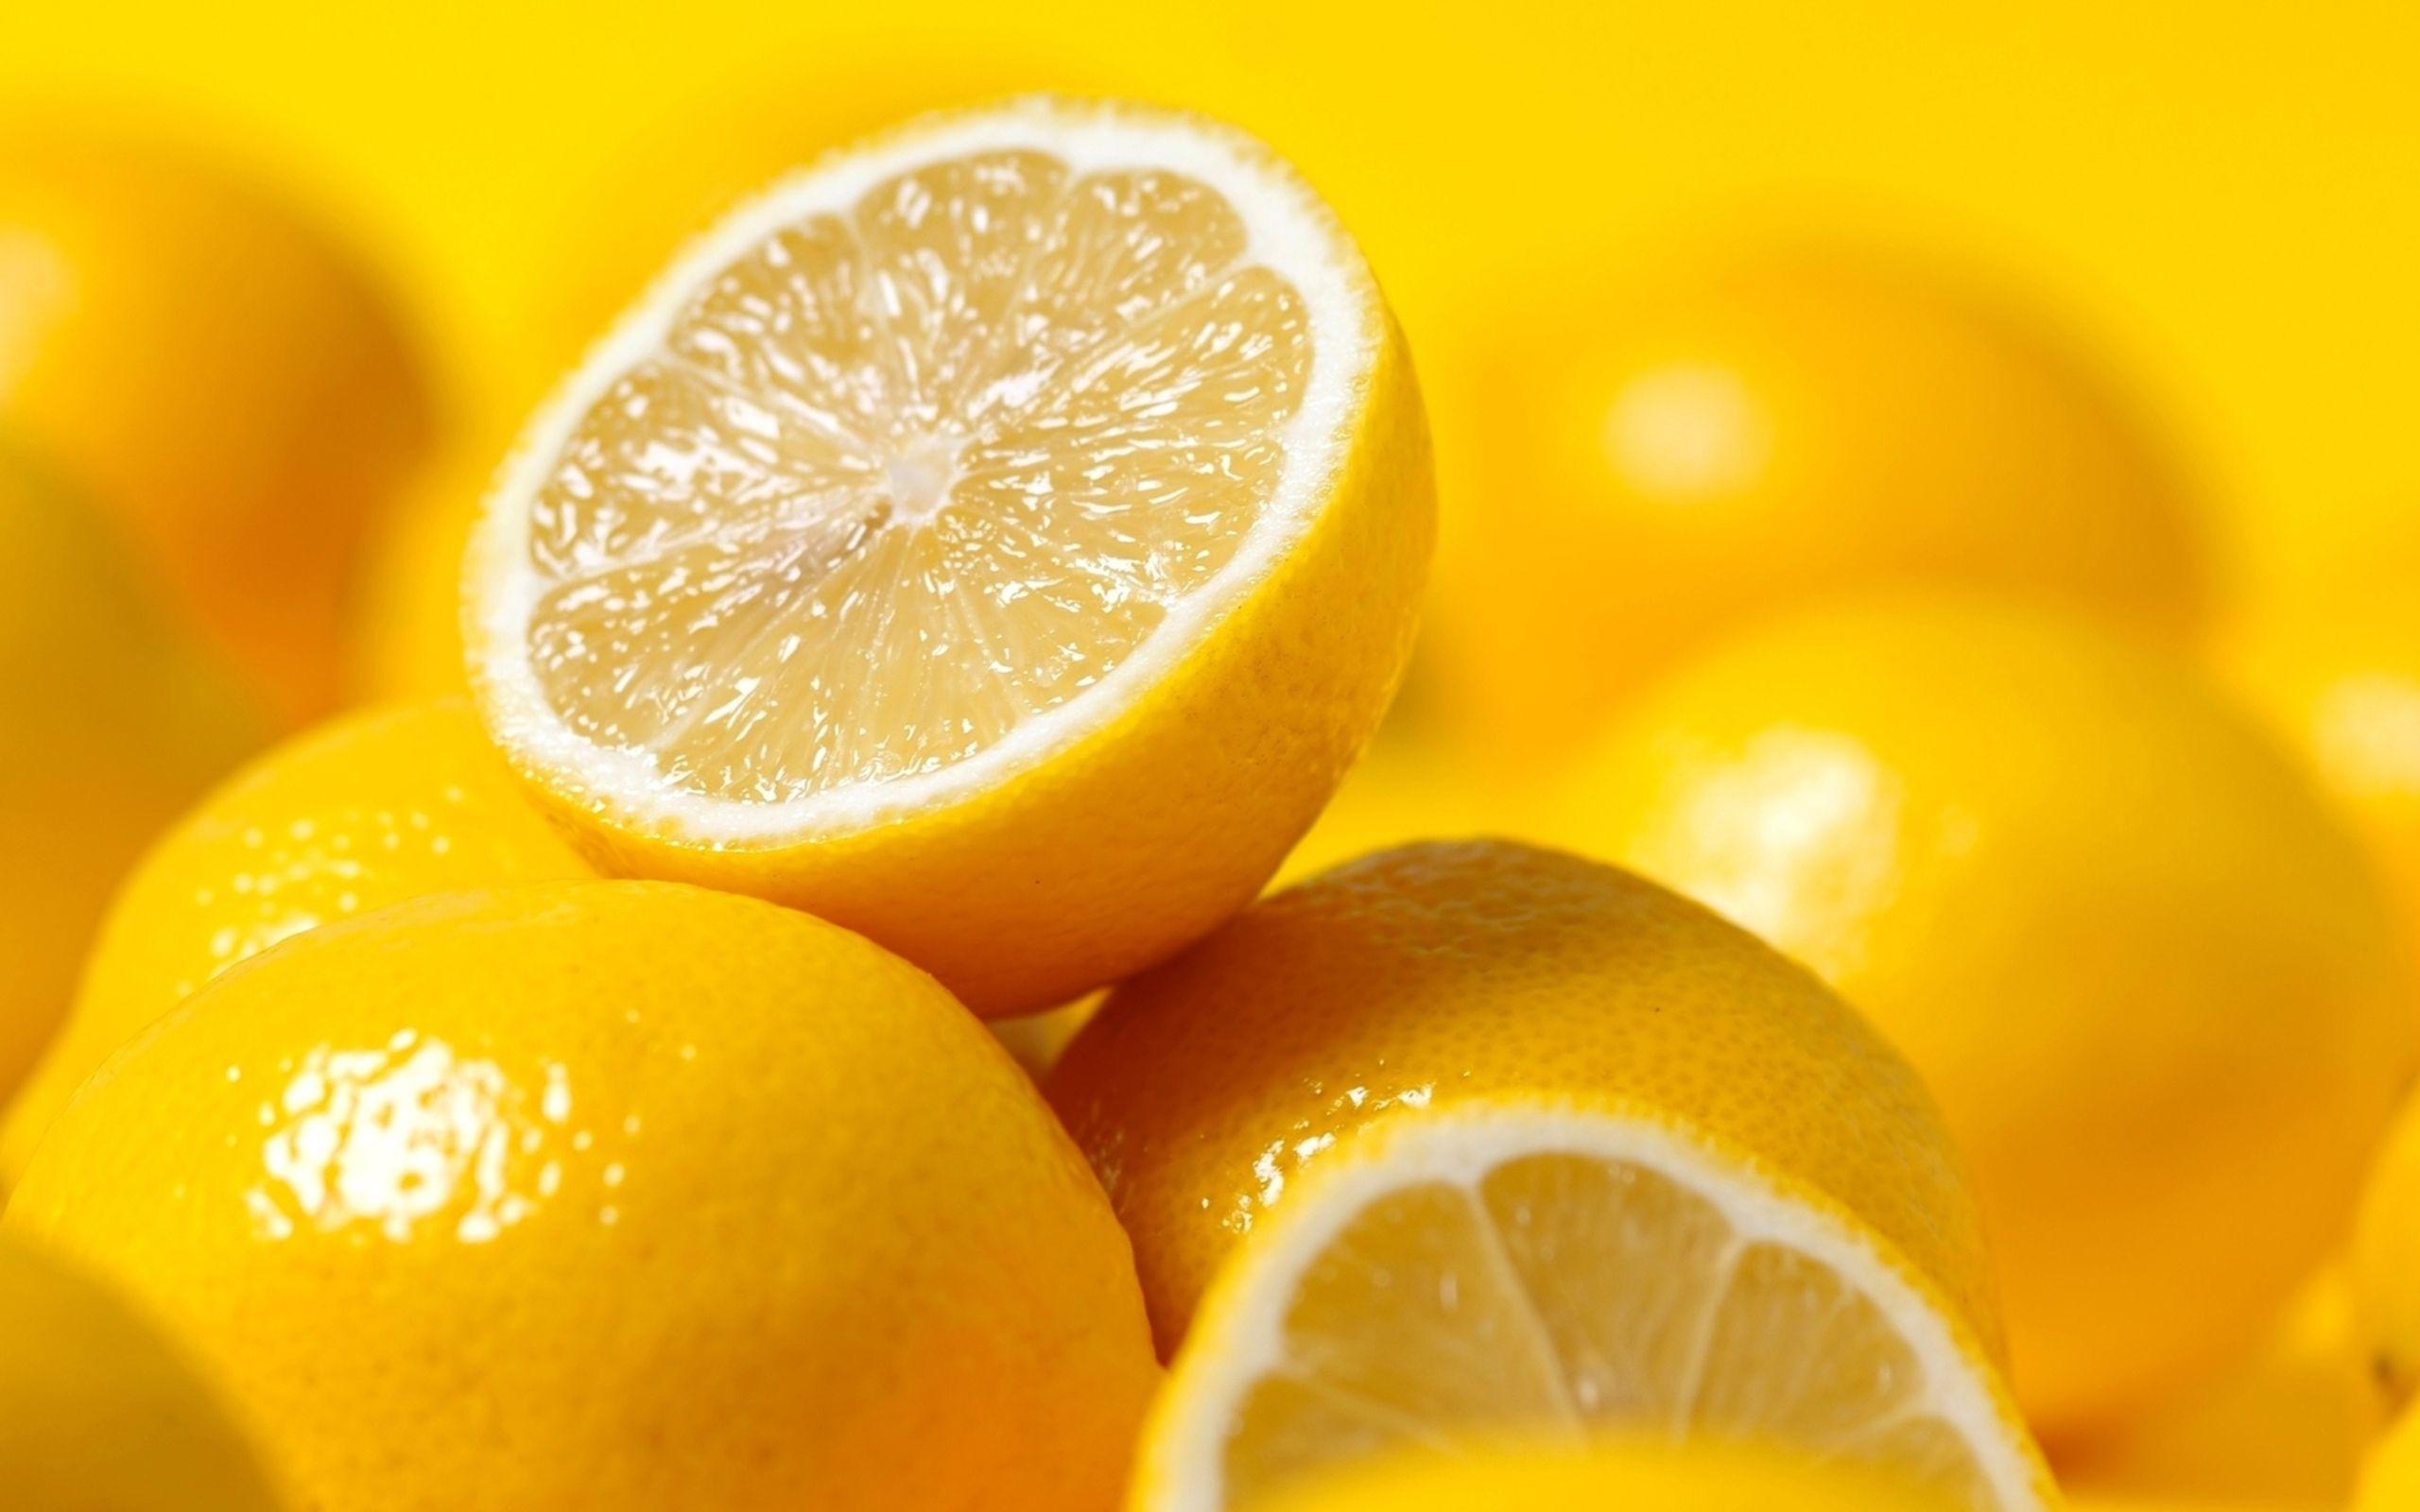 Lemon Wallpaper